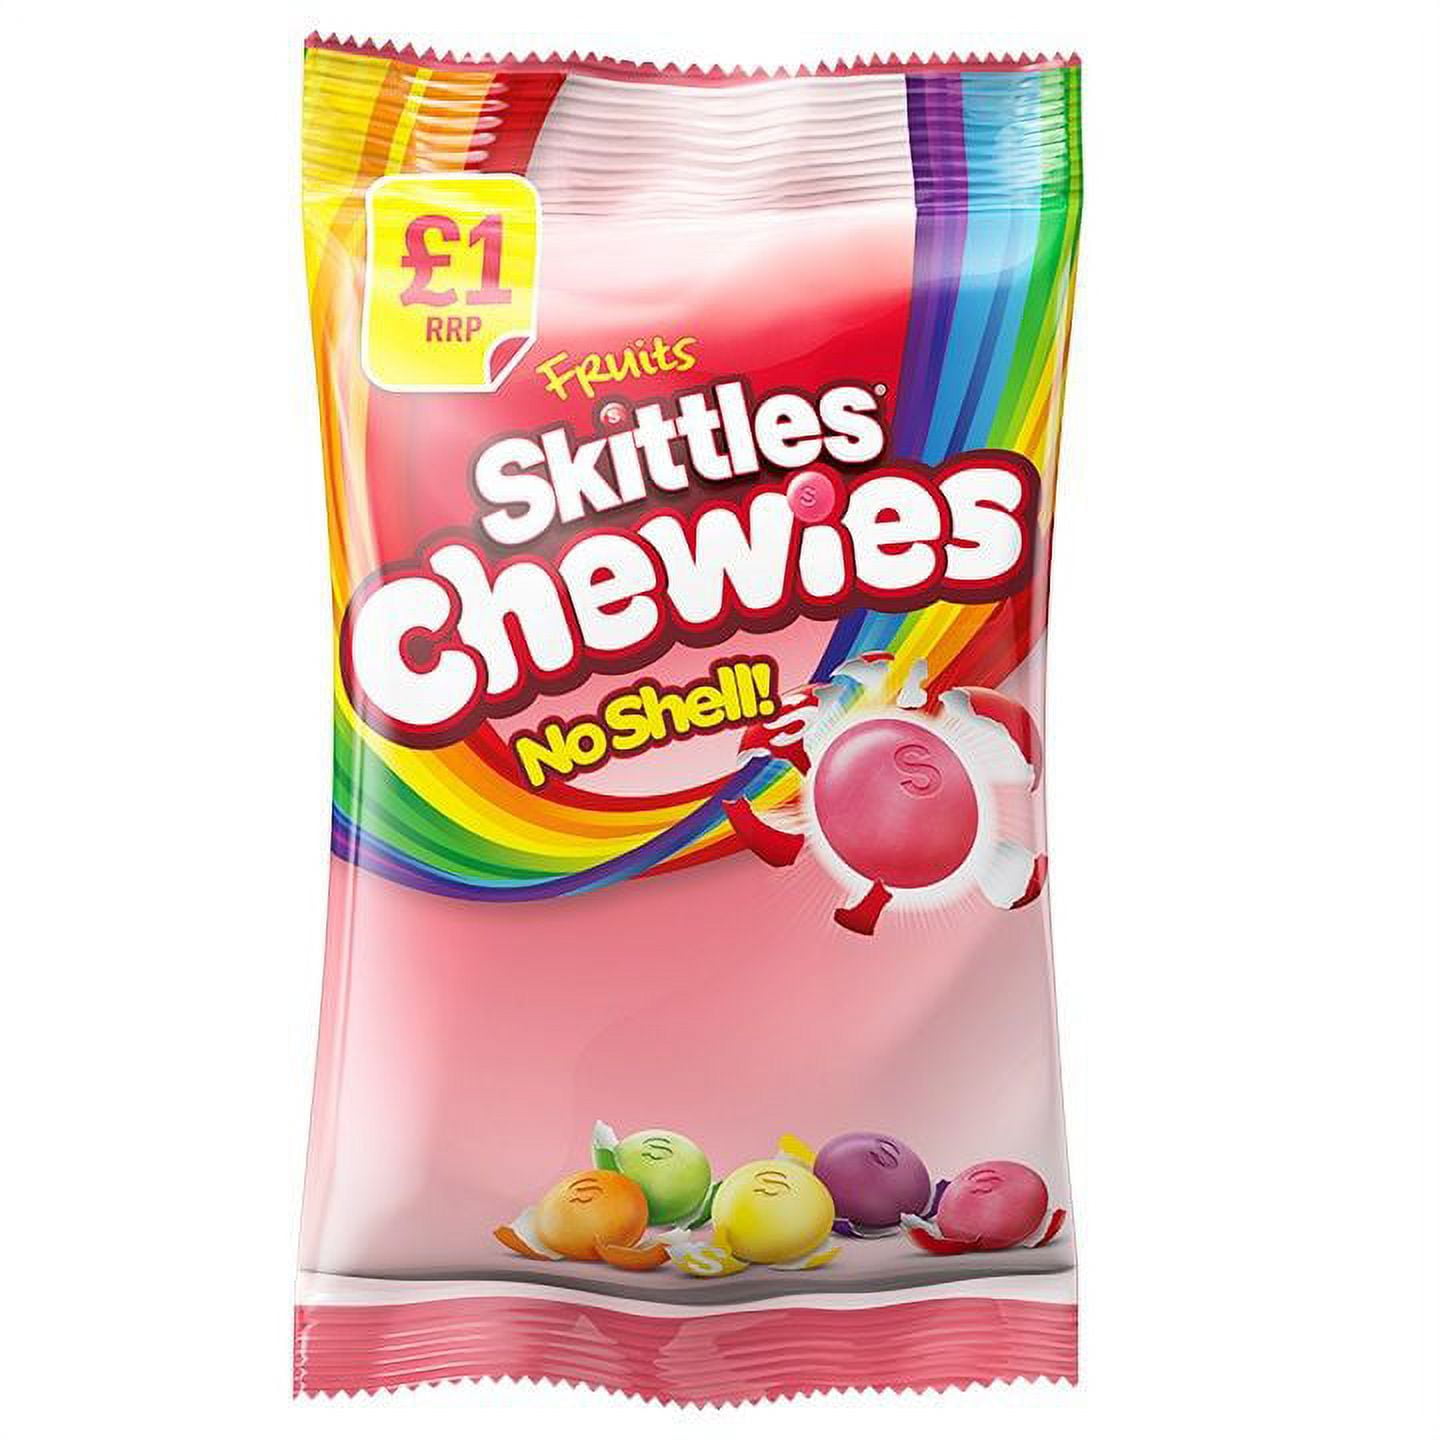 SKITTLES Chewies bonbons tendres non enrobés aux fruits 152g pas cher 